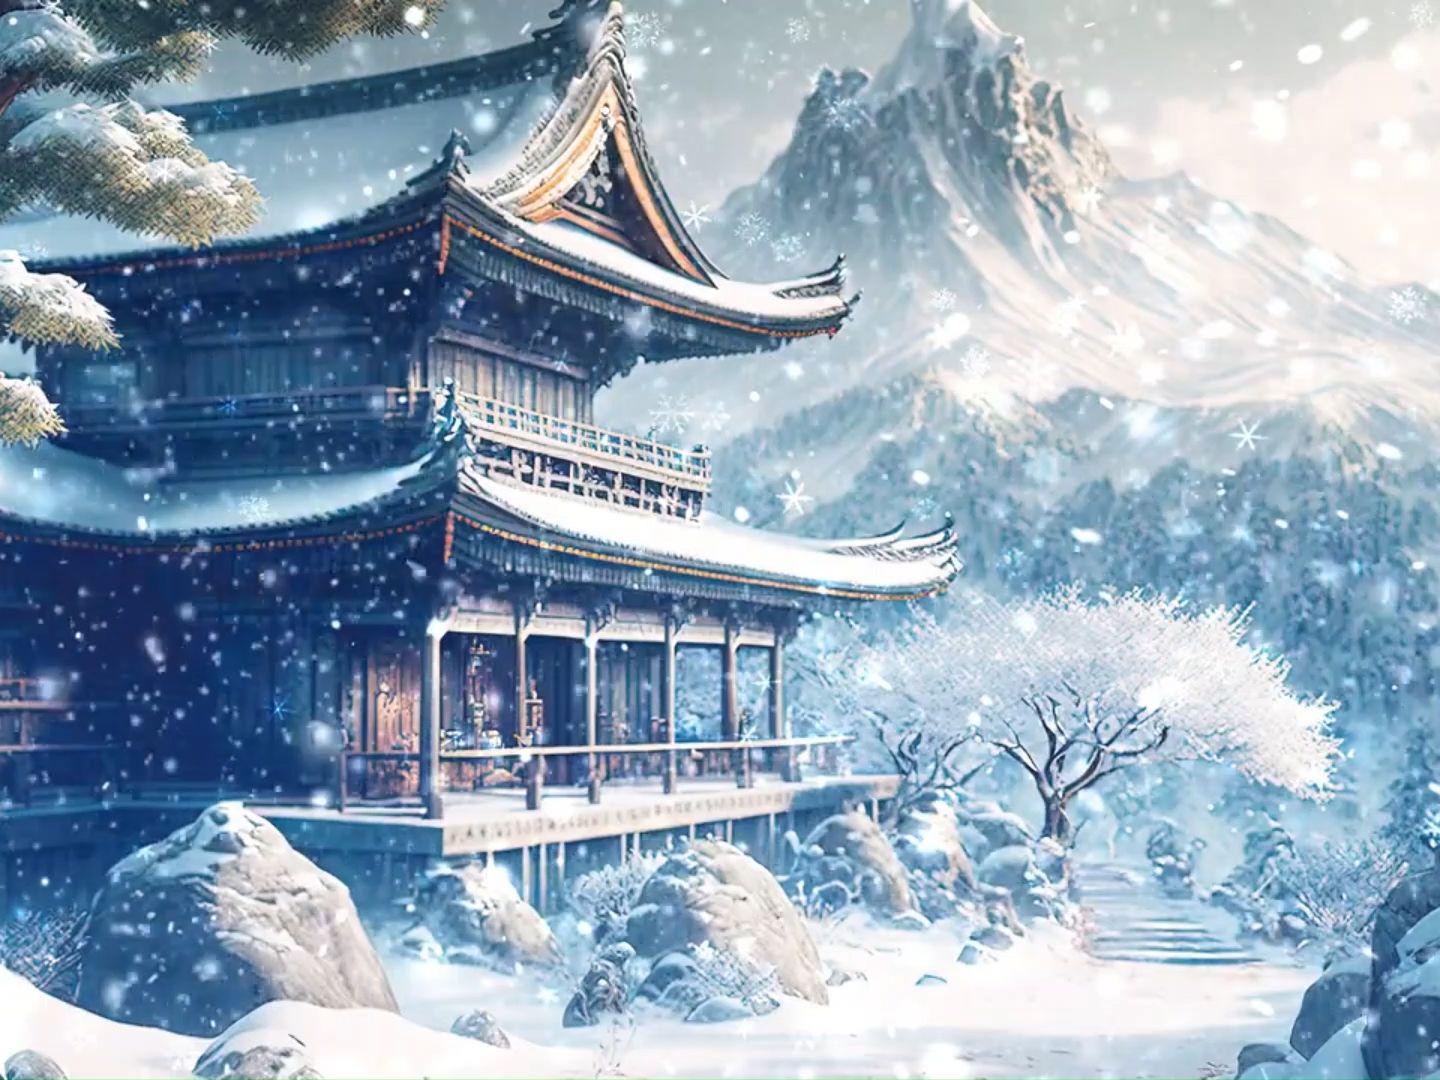 【古典】超好听的中国古典音乐，安静的夜晚倾听雪落下的声音，深度睡眠背景音乐